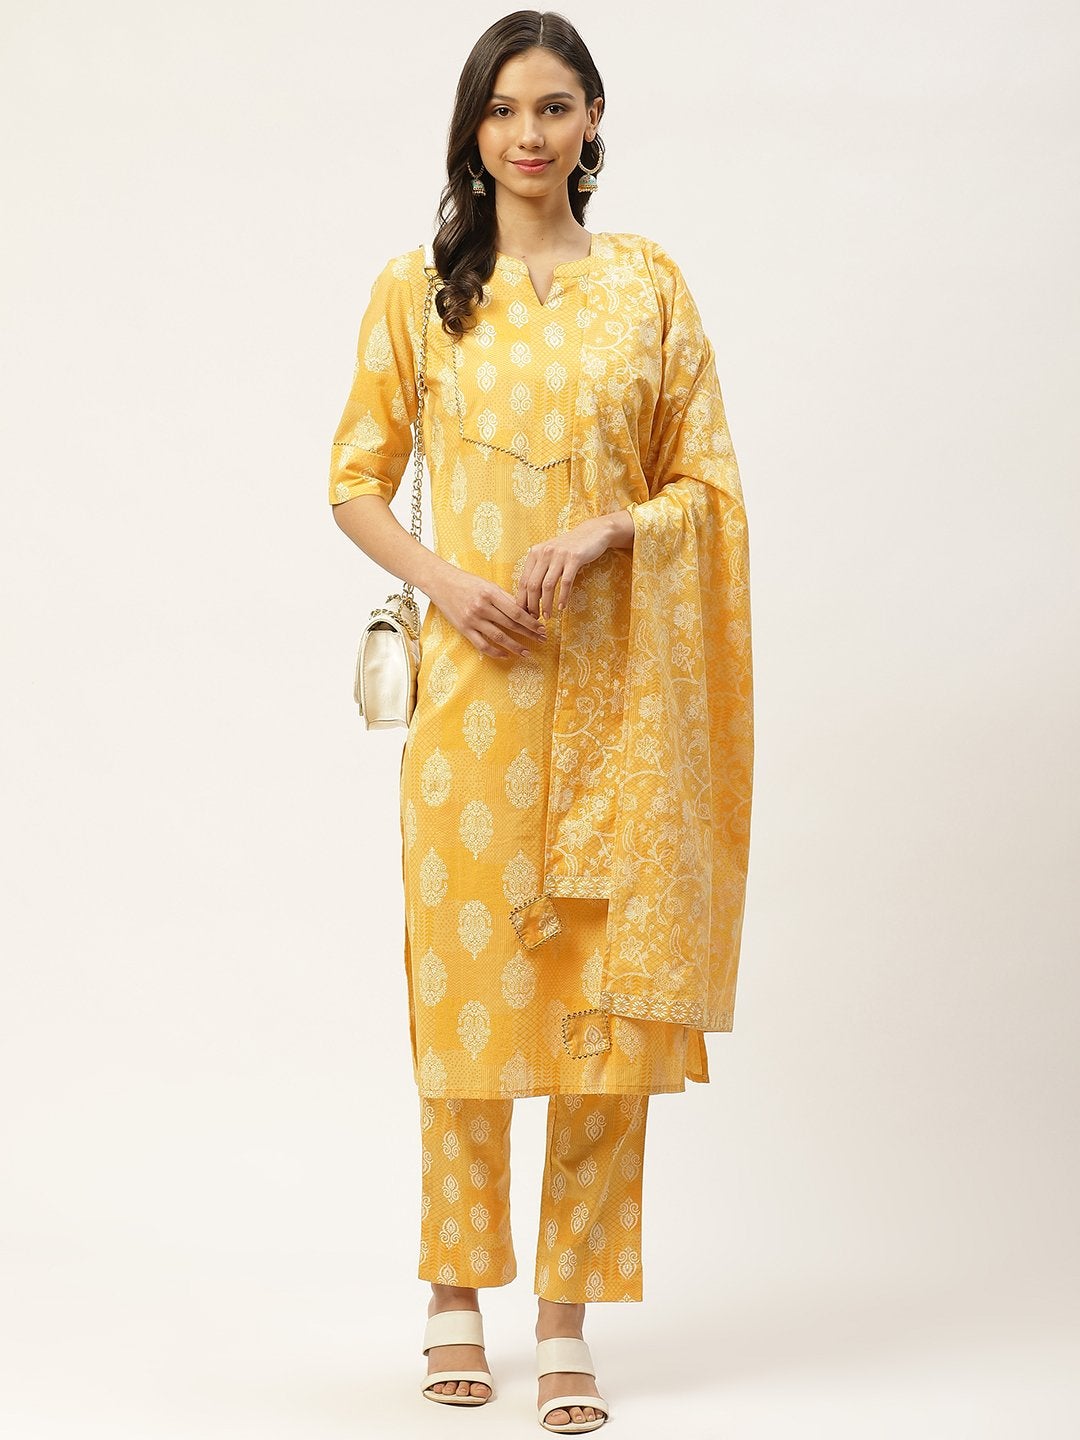 Women's Yellow & White Ethnic Hand Printed Cotton Kurta with Trousers & Dupatta - Maaesa